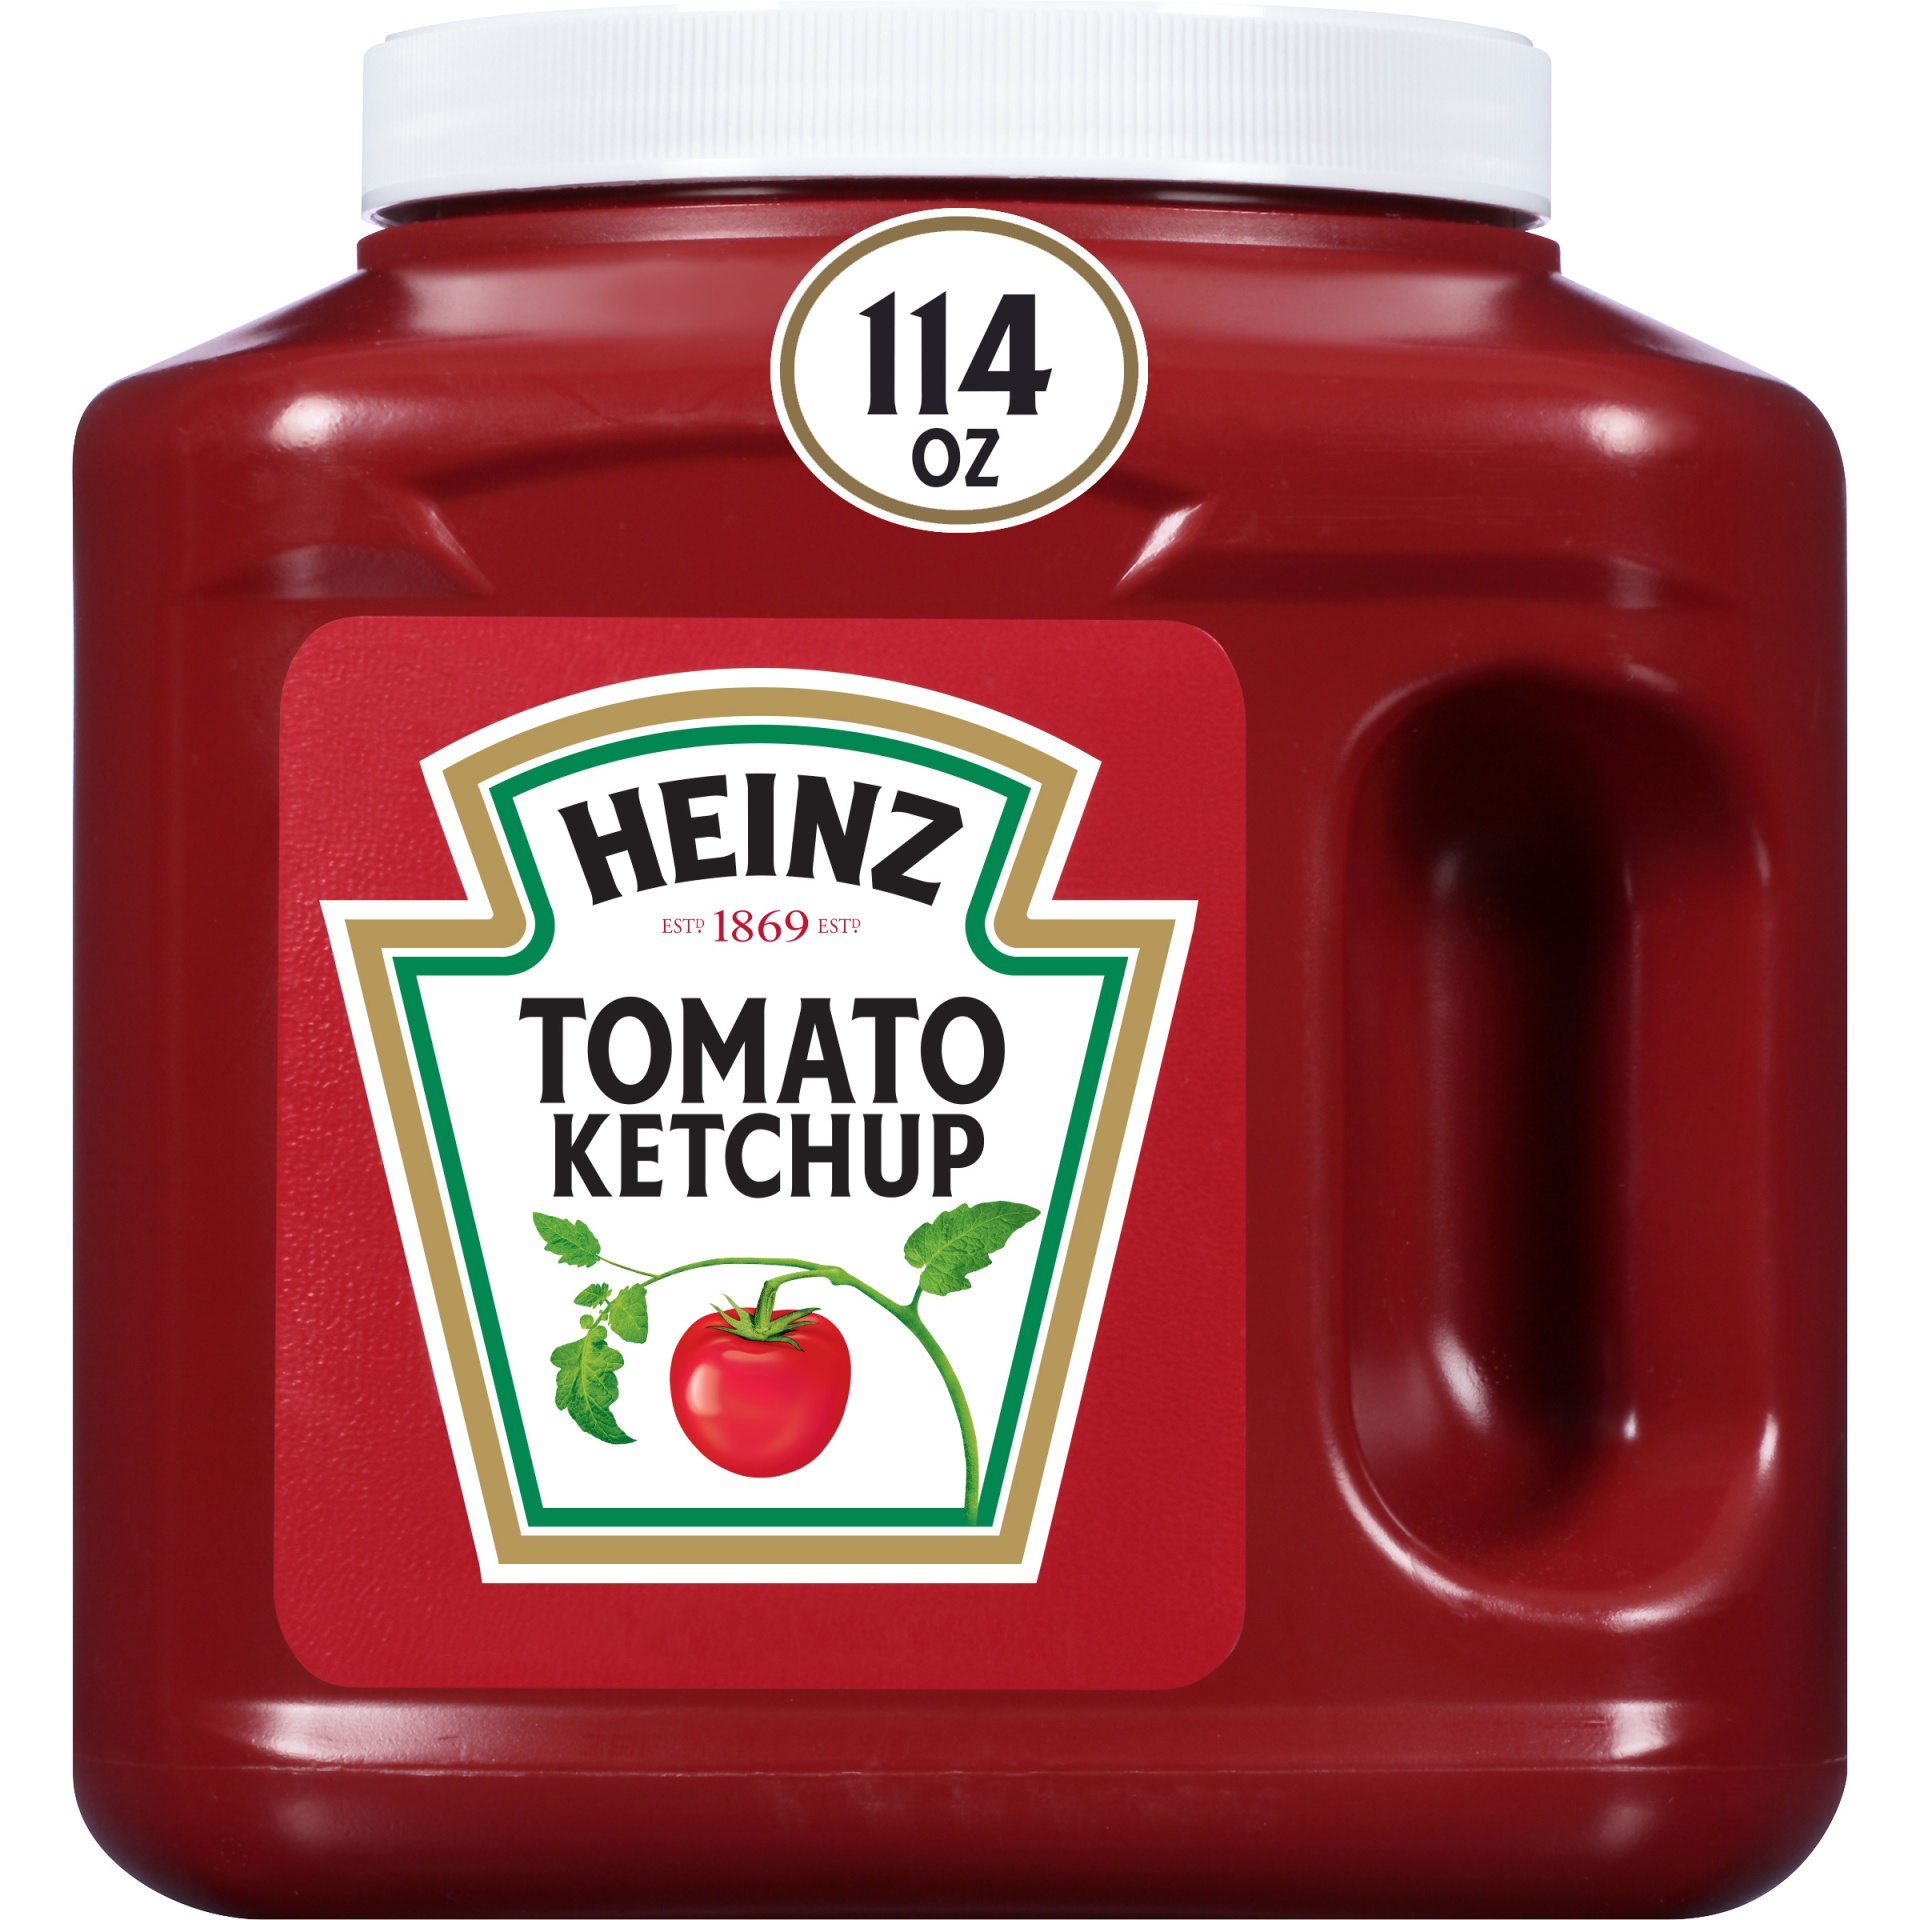 slide 1 of 5, Heinz Tomato Ketchup Jug, 114 oz